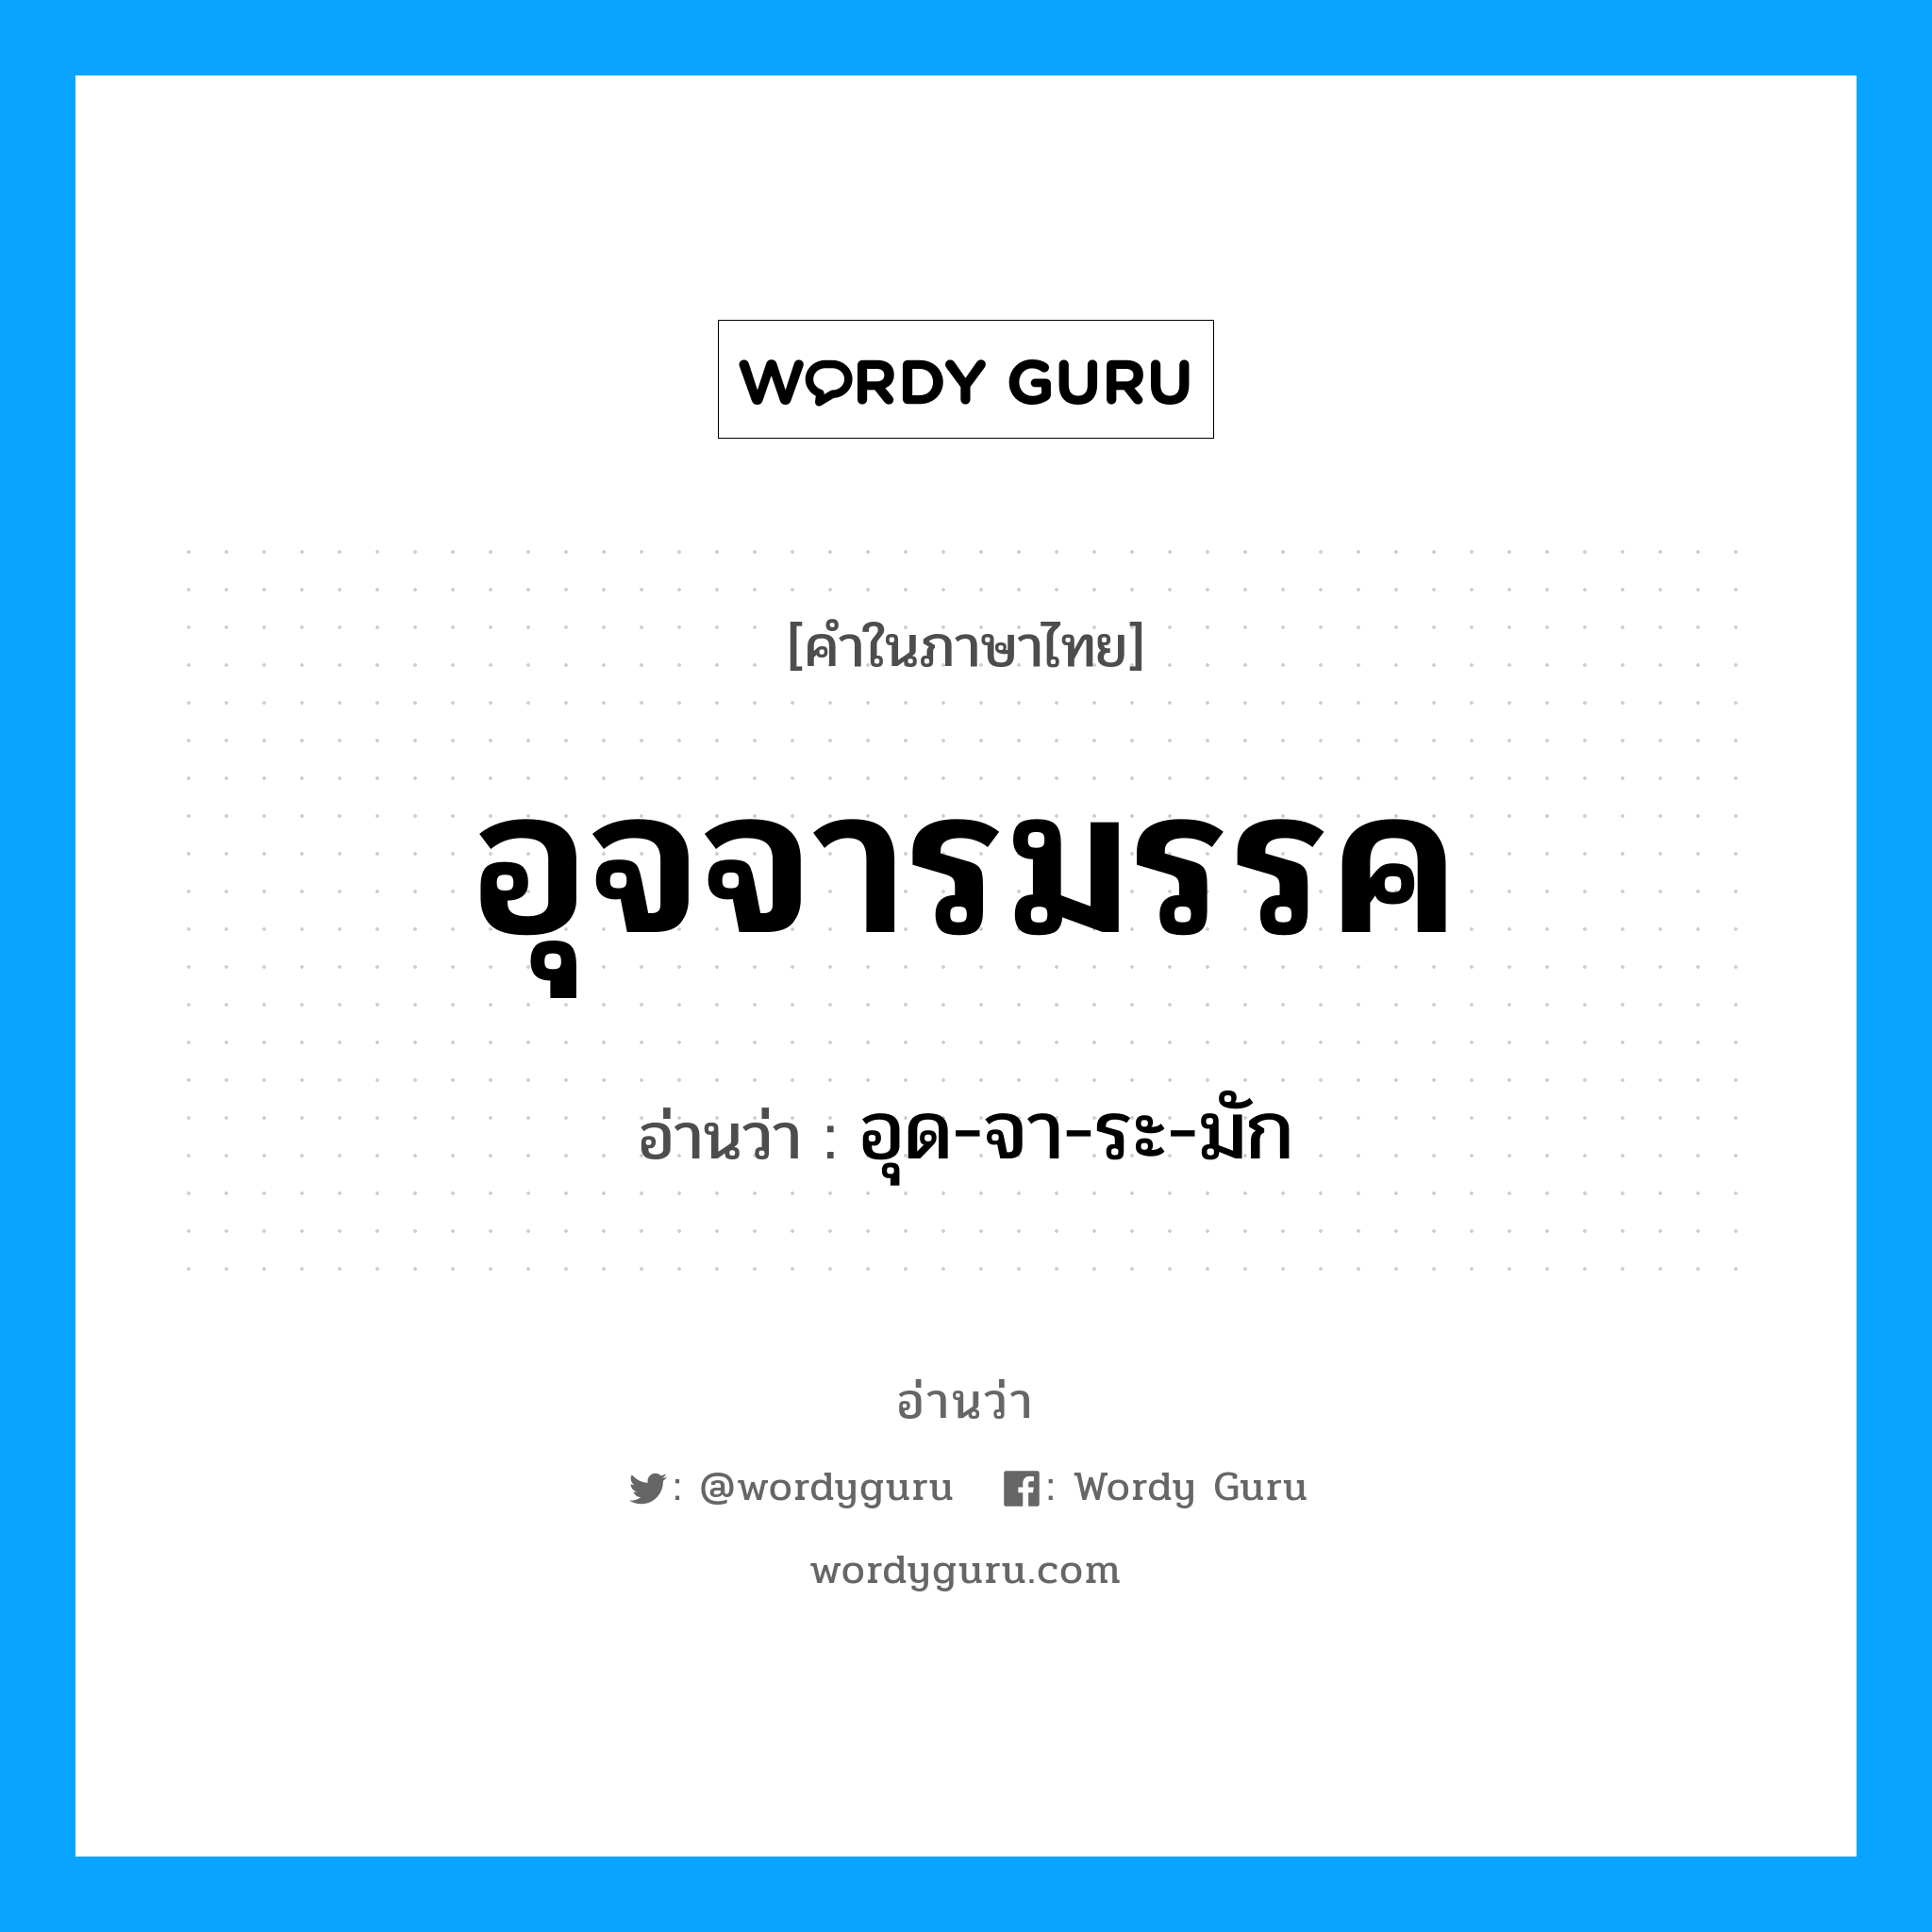 อุด-จา-ระ-มัก เป็นคำอ่านของคำไหน?, คำในภาษาไทย อุด-จา-ระ-มัก อ่านว่า อุจจารมรรค